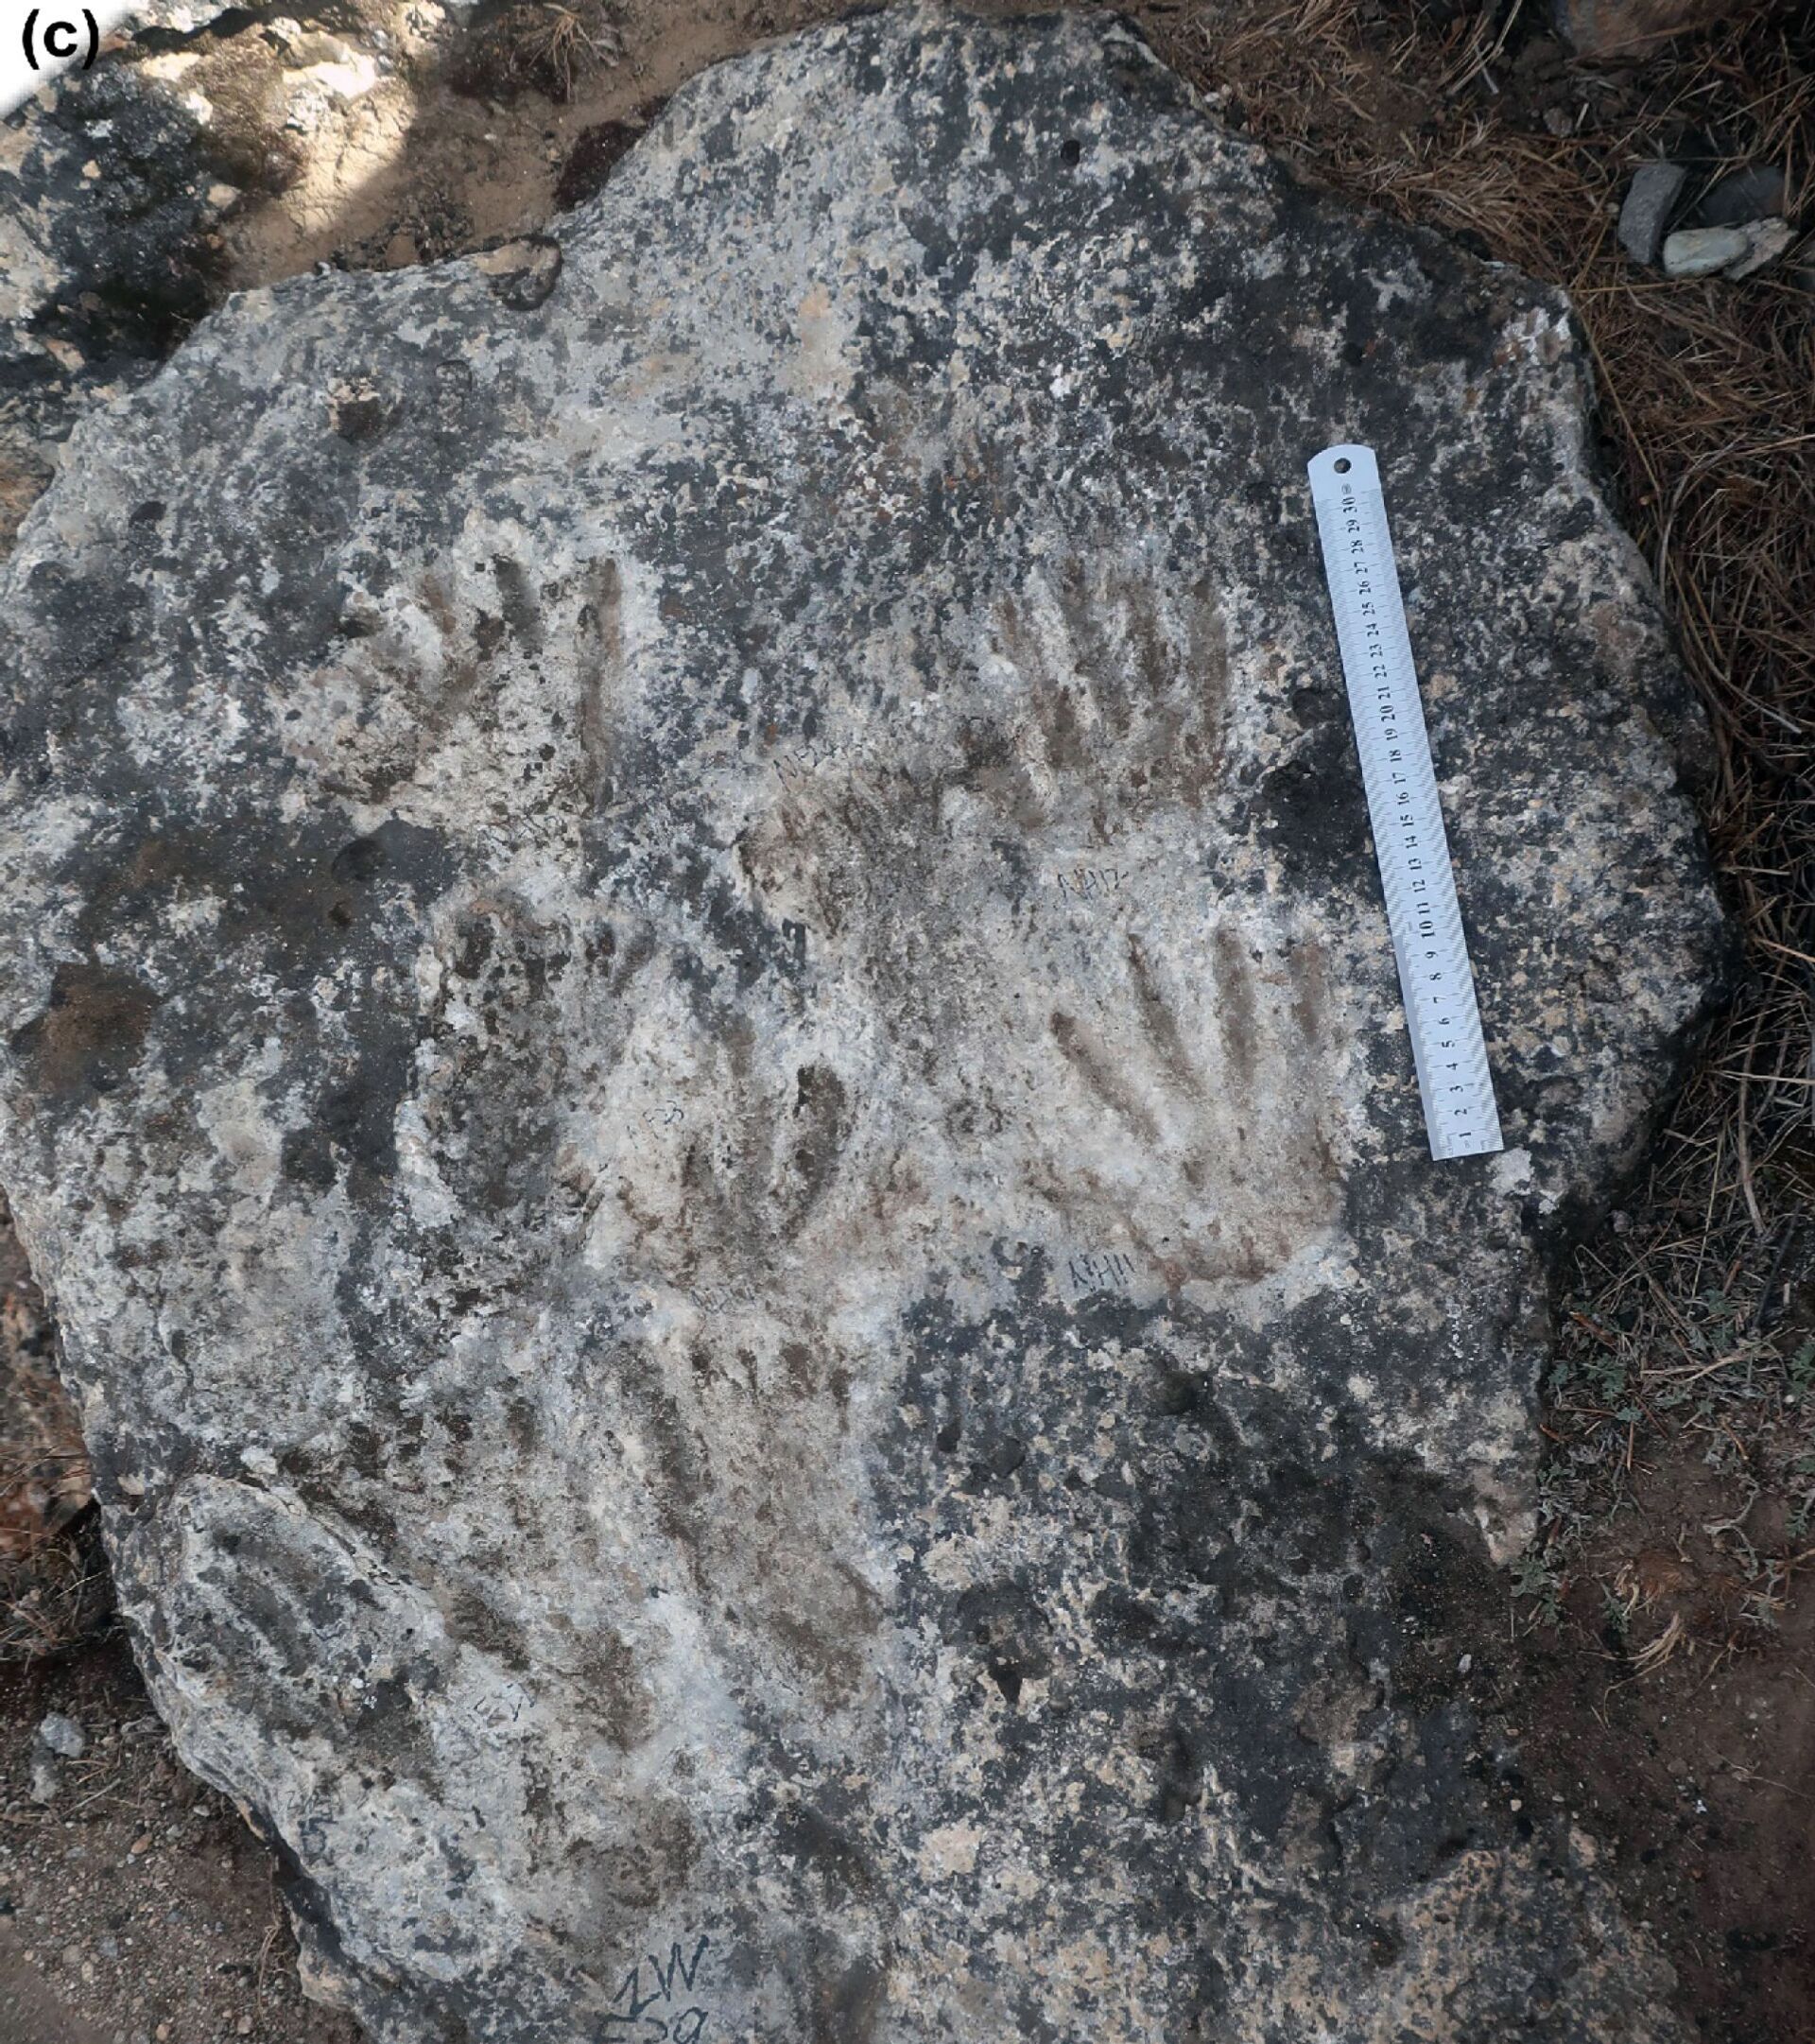 Impressões de mãos e pés de crianças do Paleolítico descobertas no Tibete - Sputnik Brasil, 1920, 09.11.2021